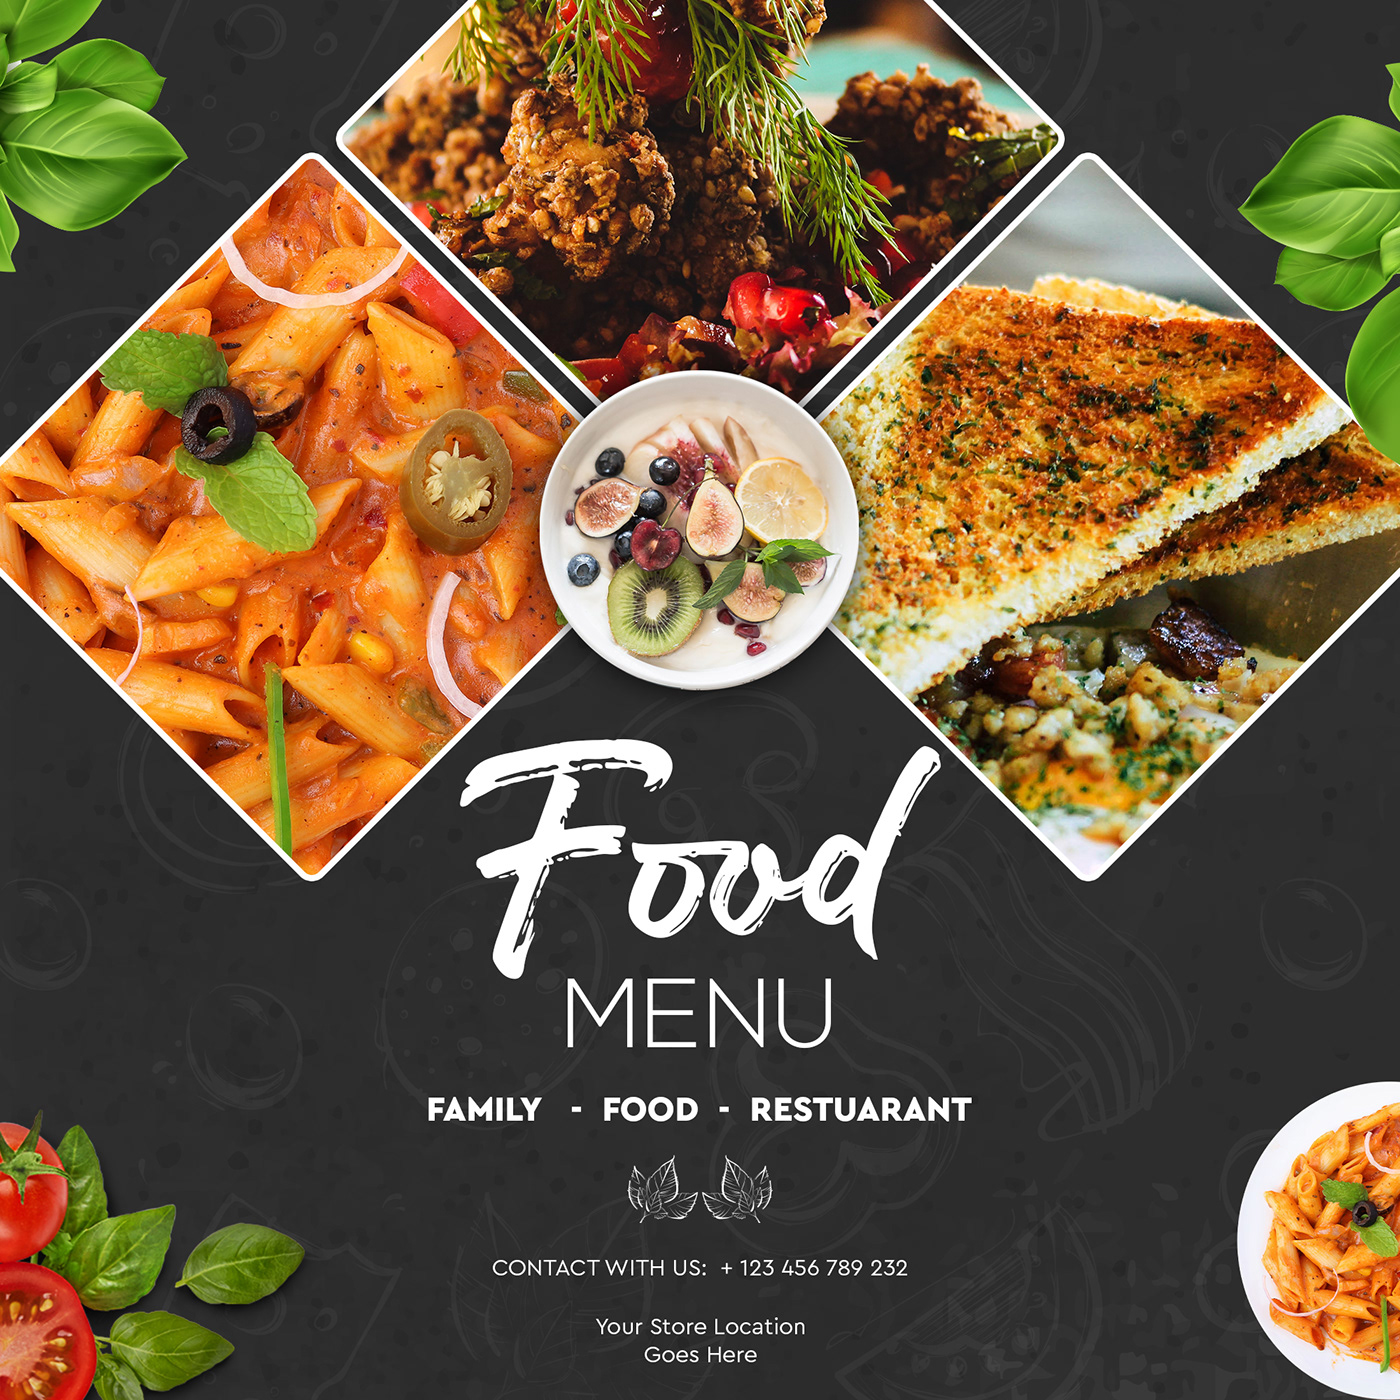 Food Banner Design Free Download on Behance